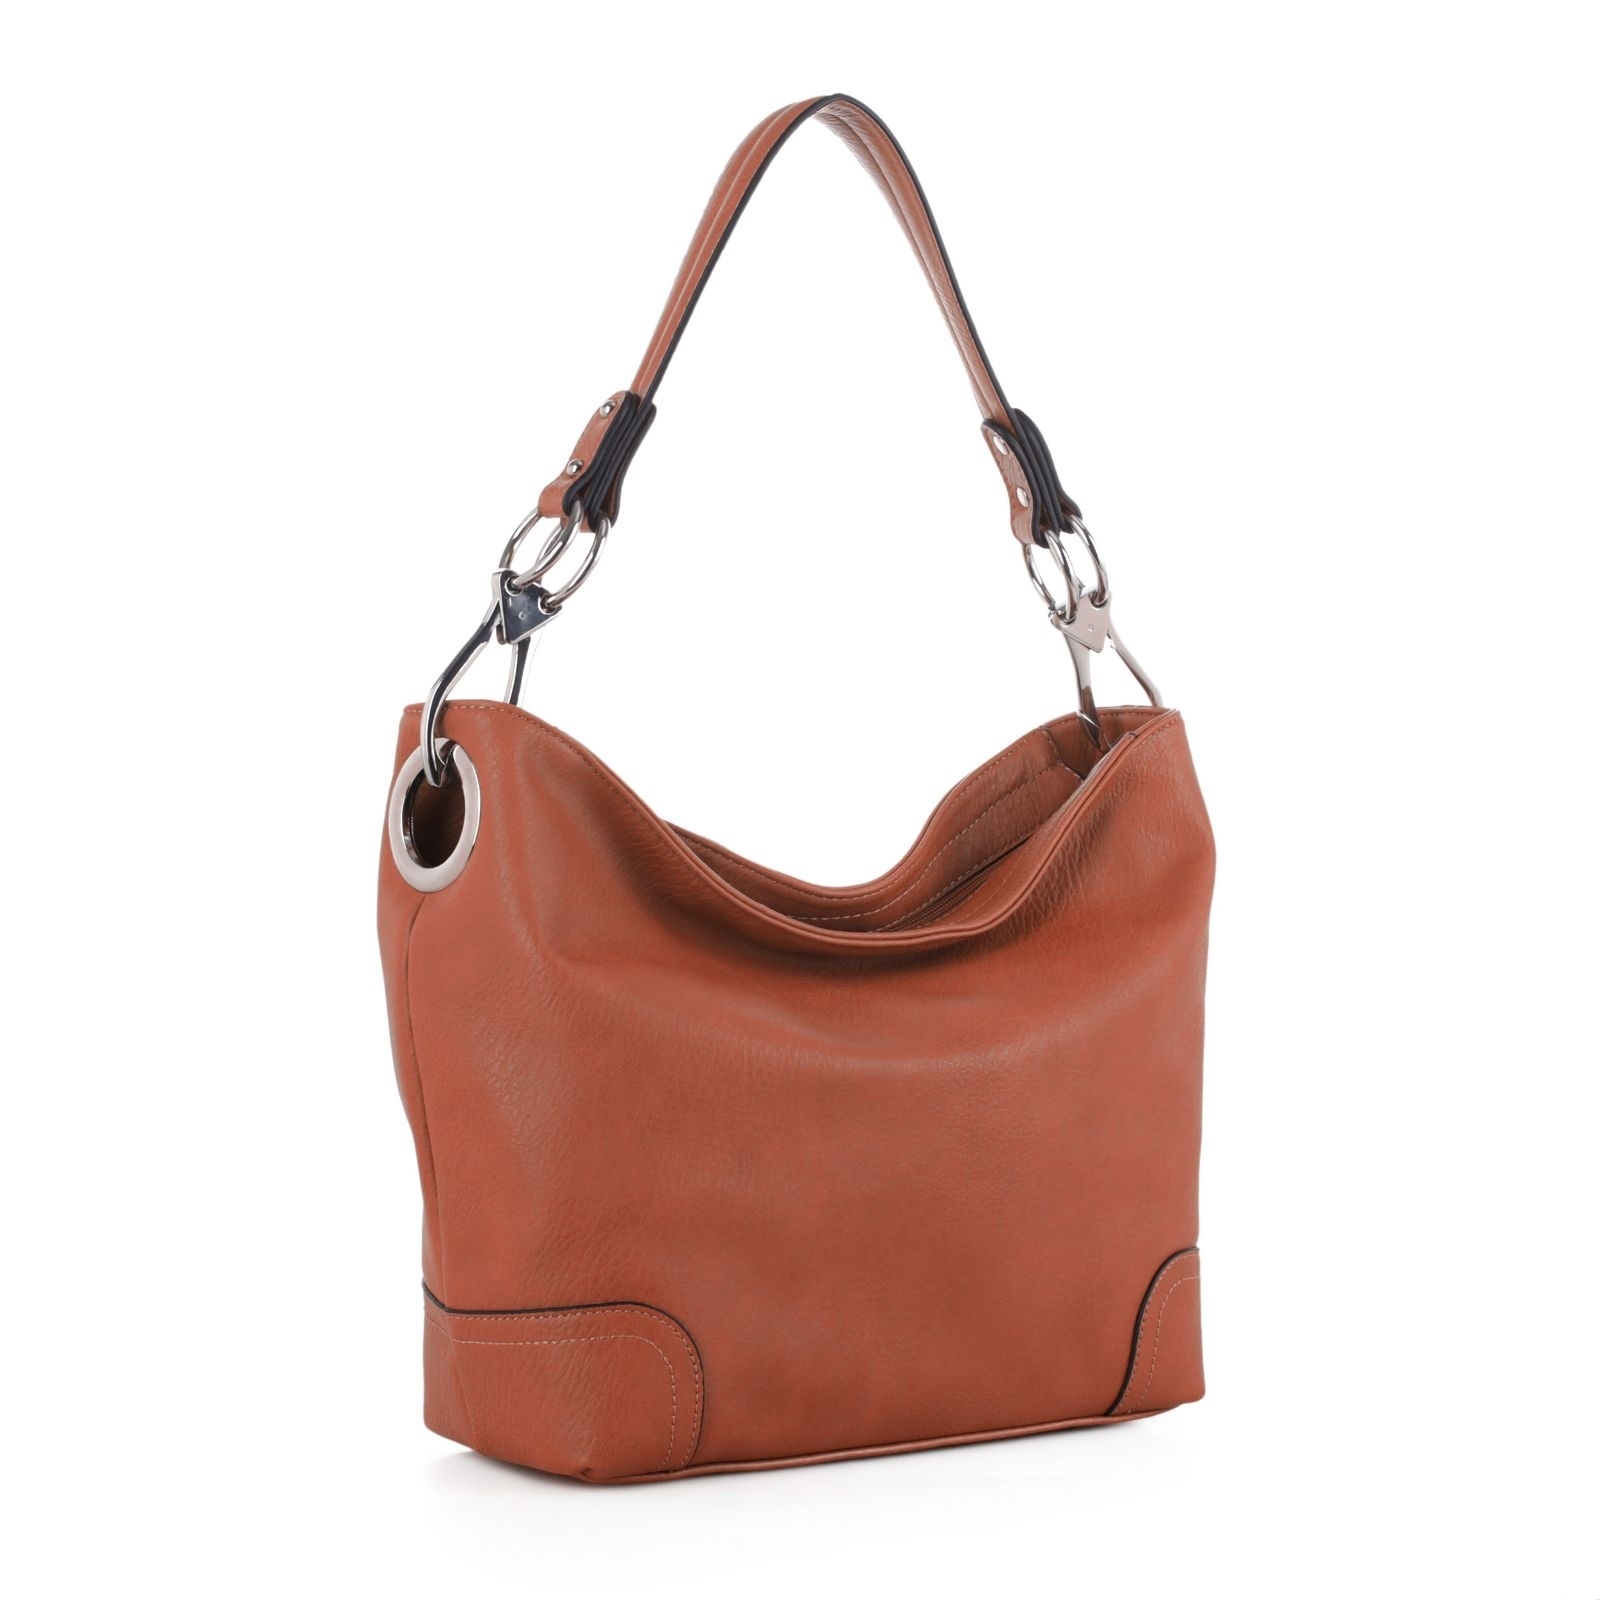 MKF Collection By Mia K. Shoulder Handbag With Snap Hook Kmiliy Soft Vegan Leather Hobo Handbag - Red Solid Kmiliy